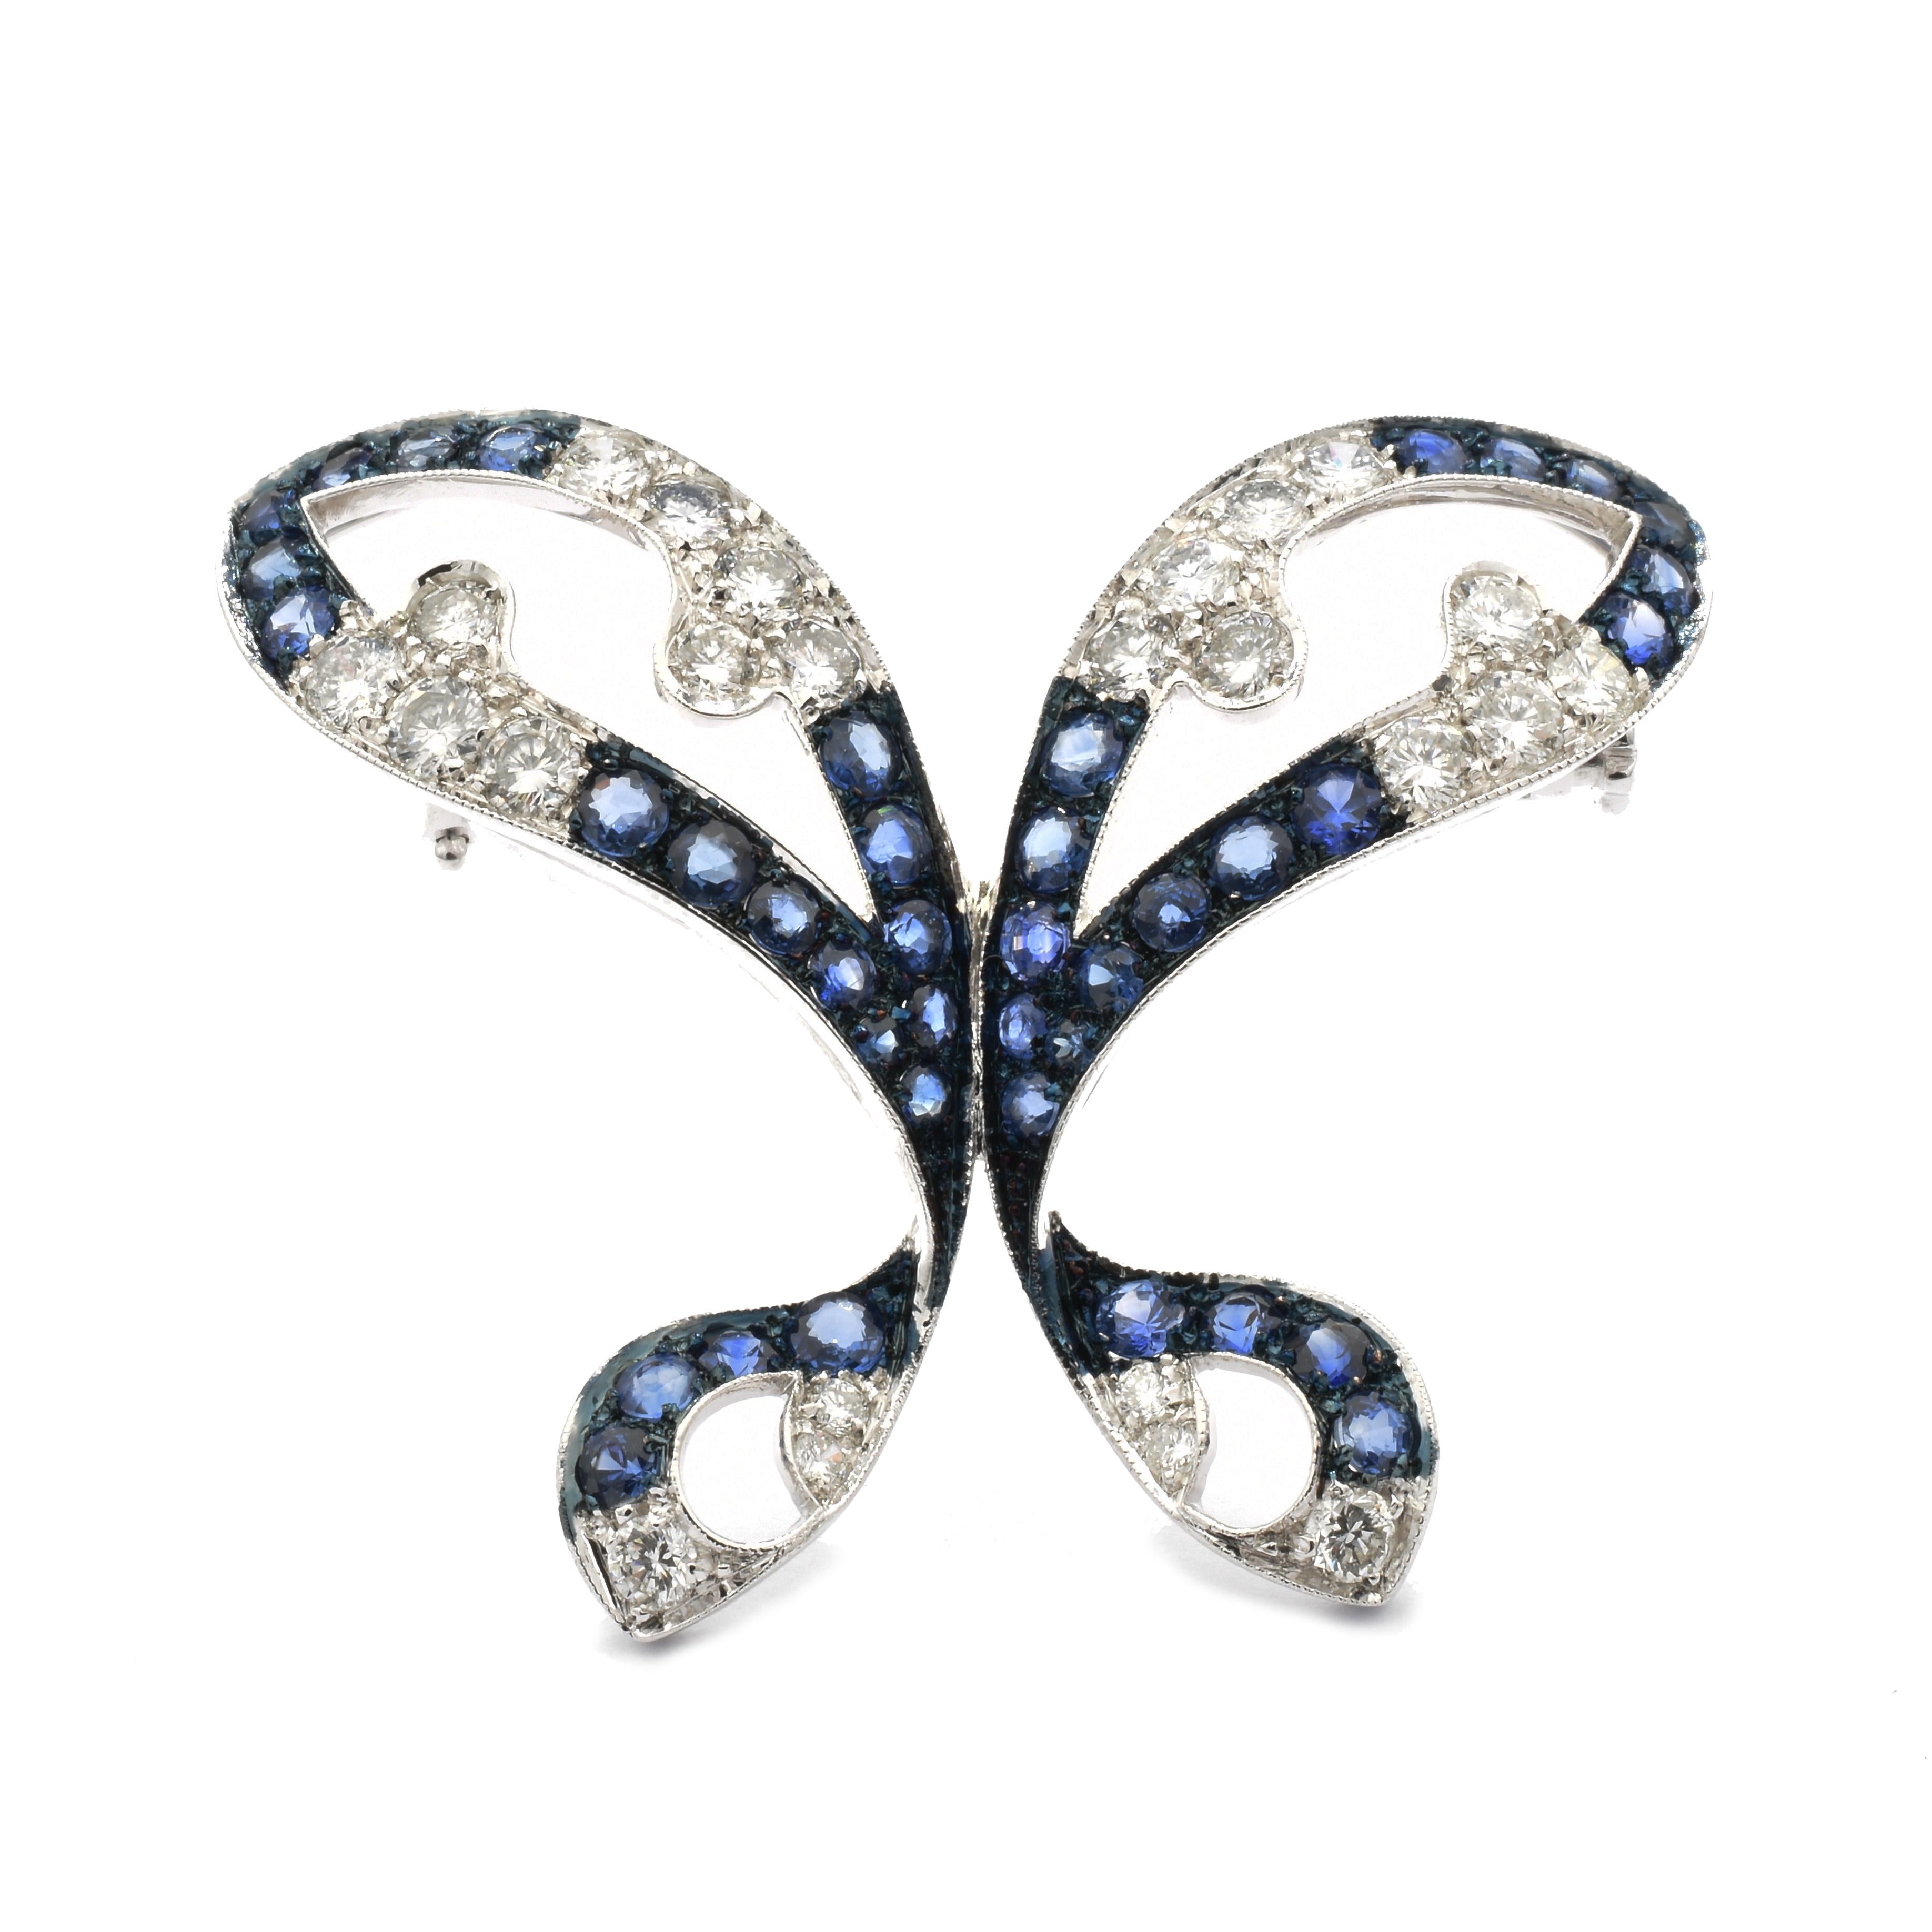 Gilberto Cassola Schmetterlingsbrosche aus 18 Kt Weißgold mit weißen Diamanten und blauen Natursaphiren
Ein sehr einzigartiger Butterfly, der auf einem Kleid, einer Jacke oder auch einem Schal getragen werden kann. 
Handgefertigte